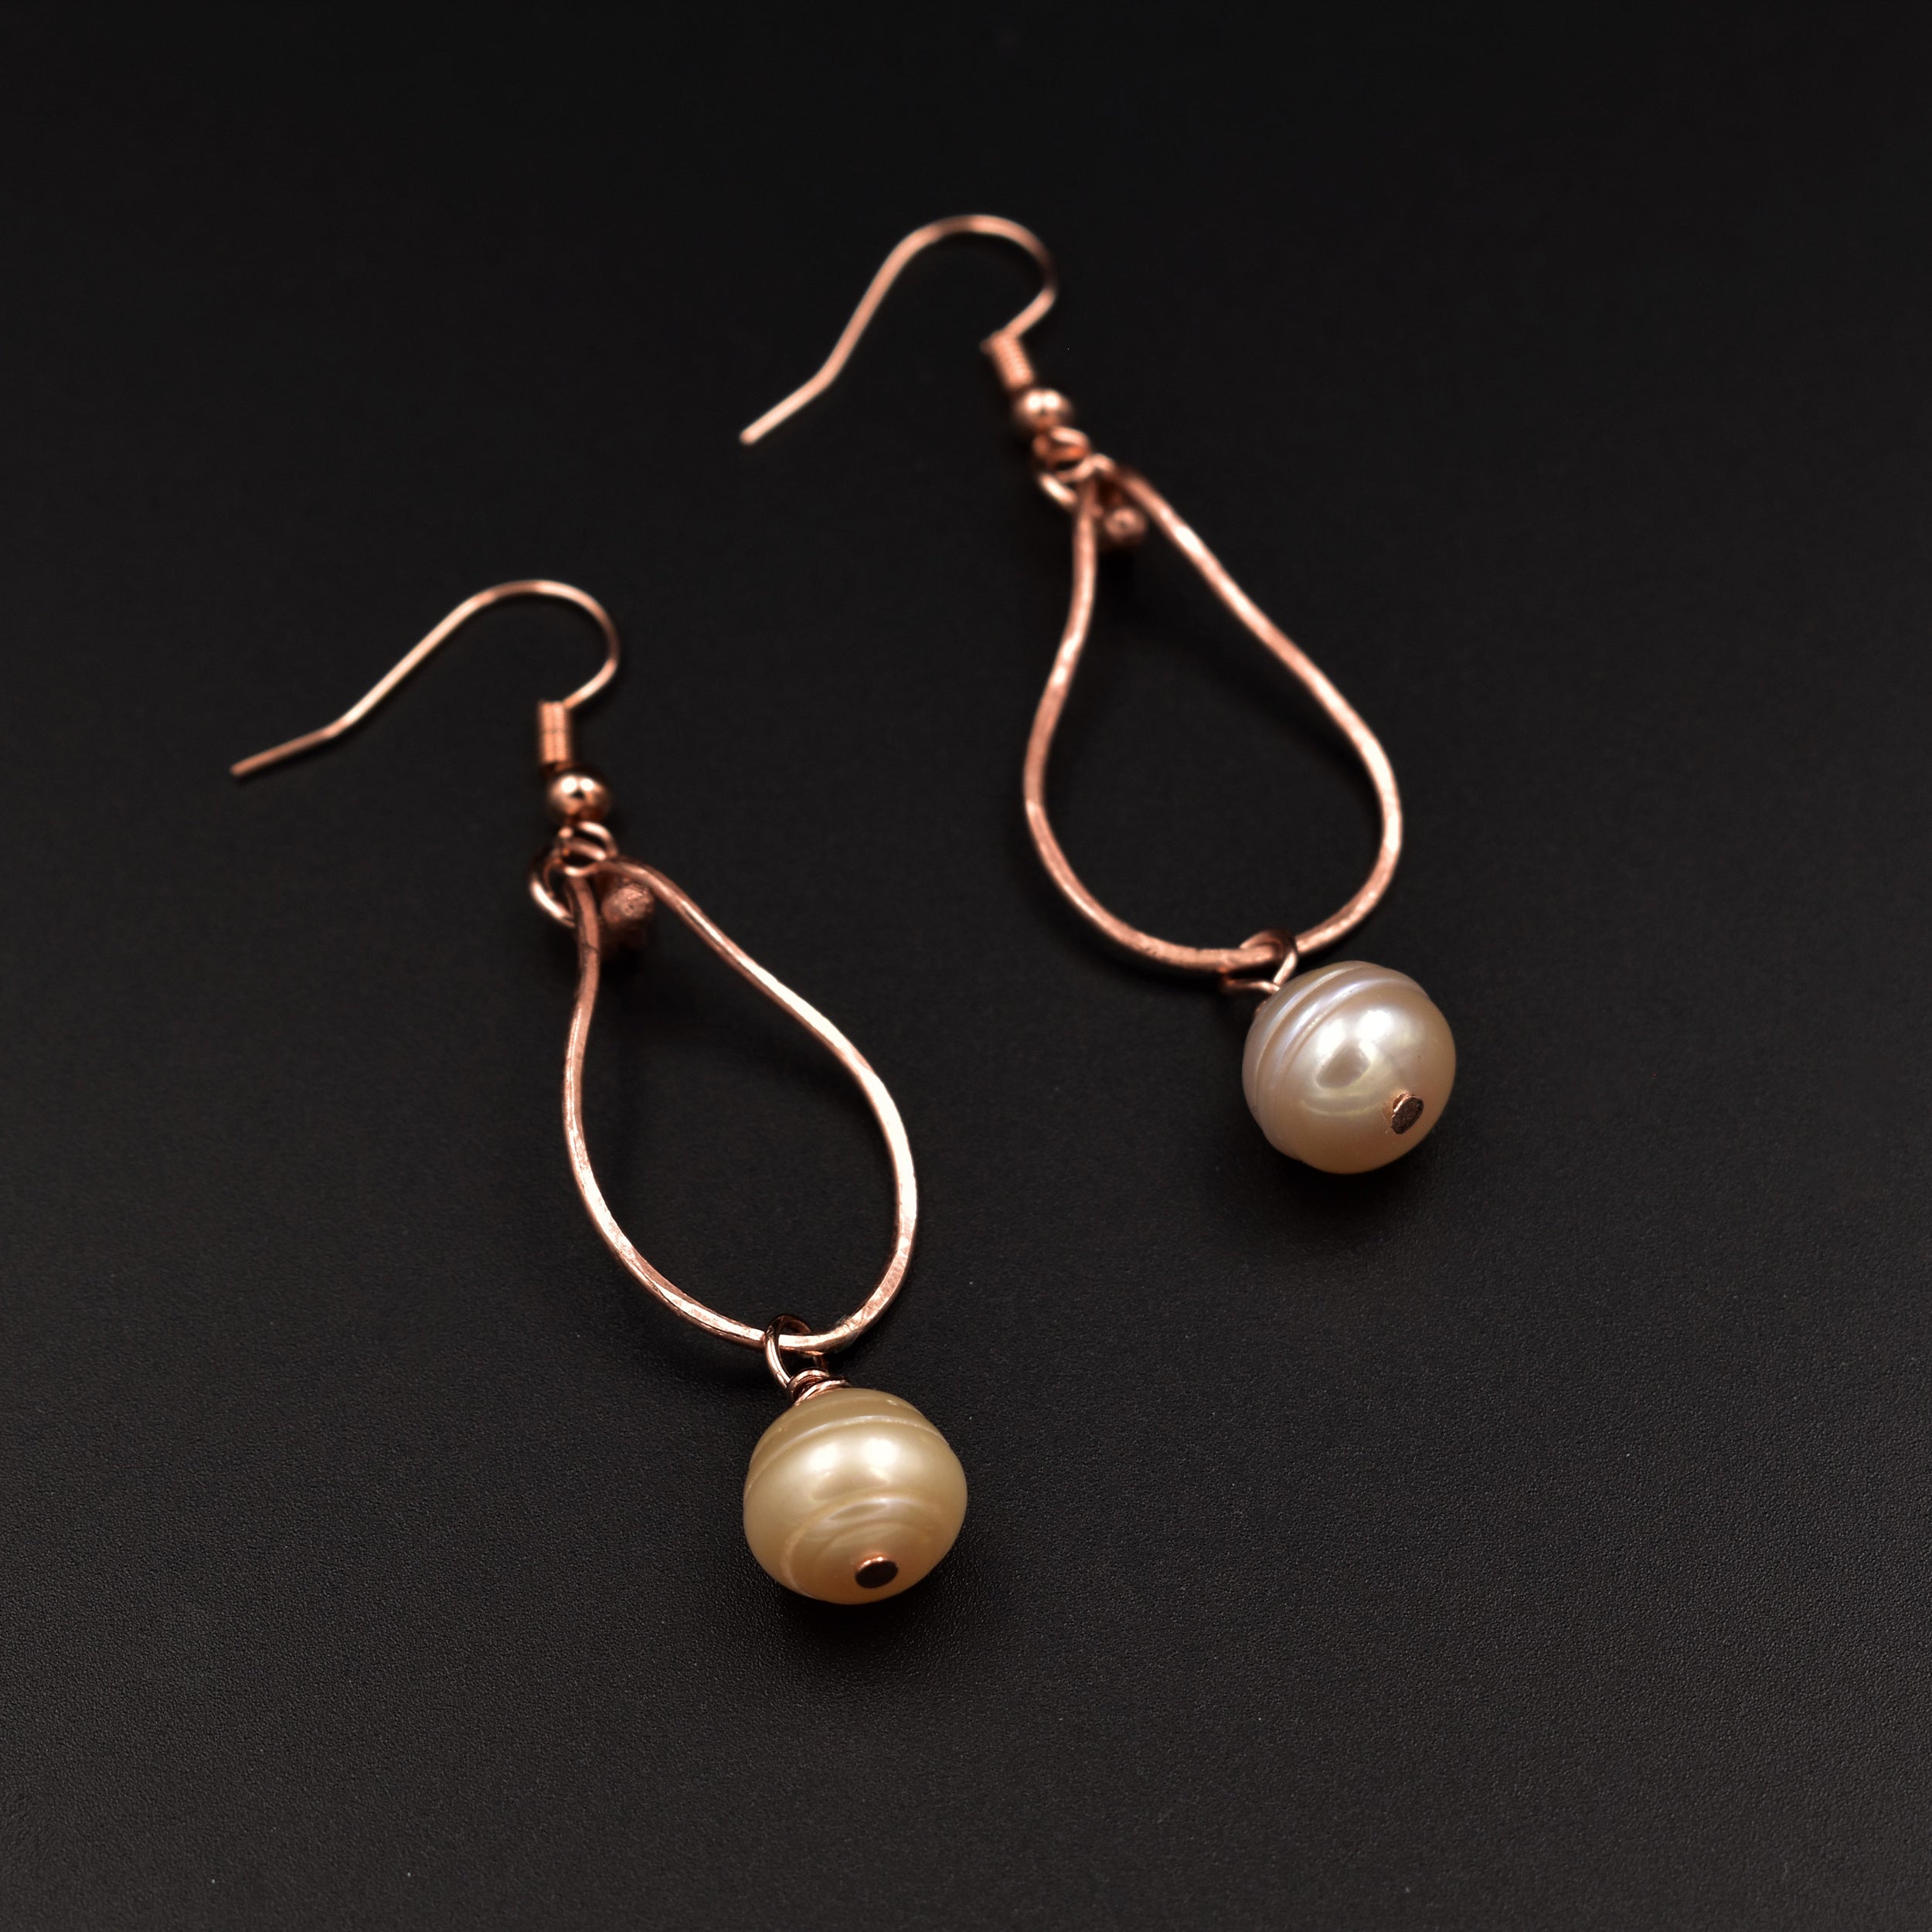 Moonlight Cascade Earrings - Peach Pearls